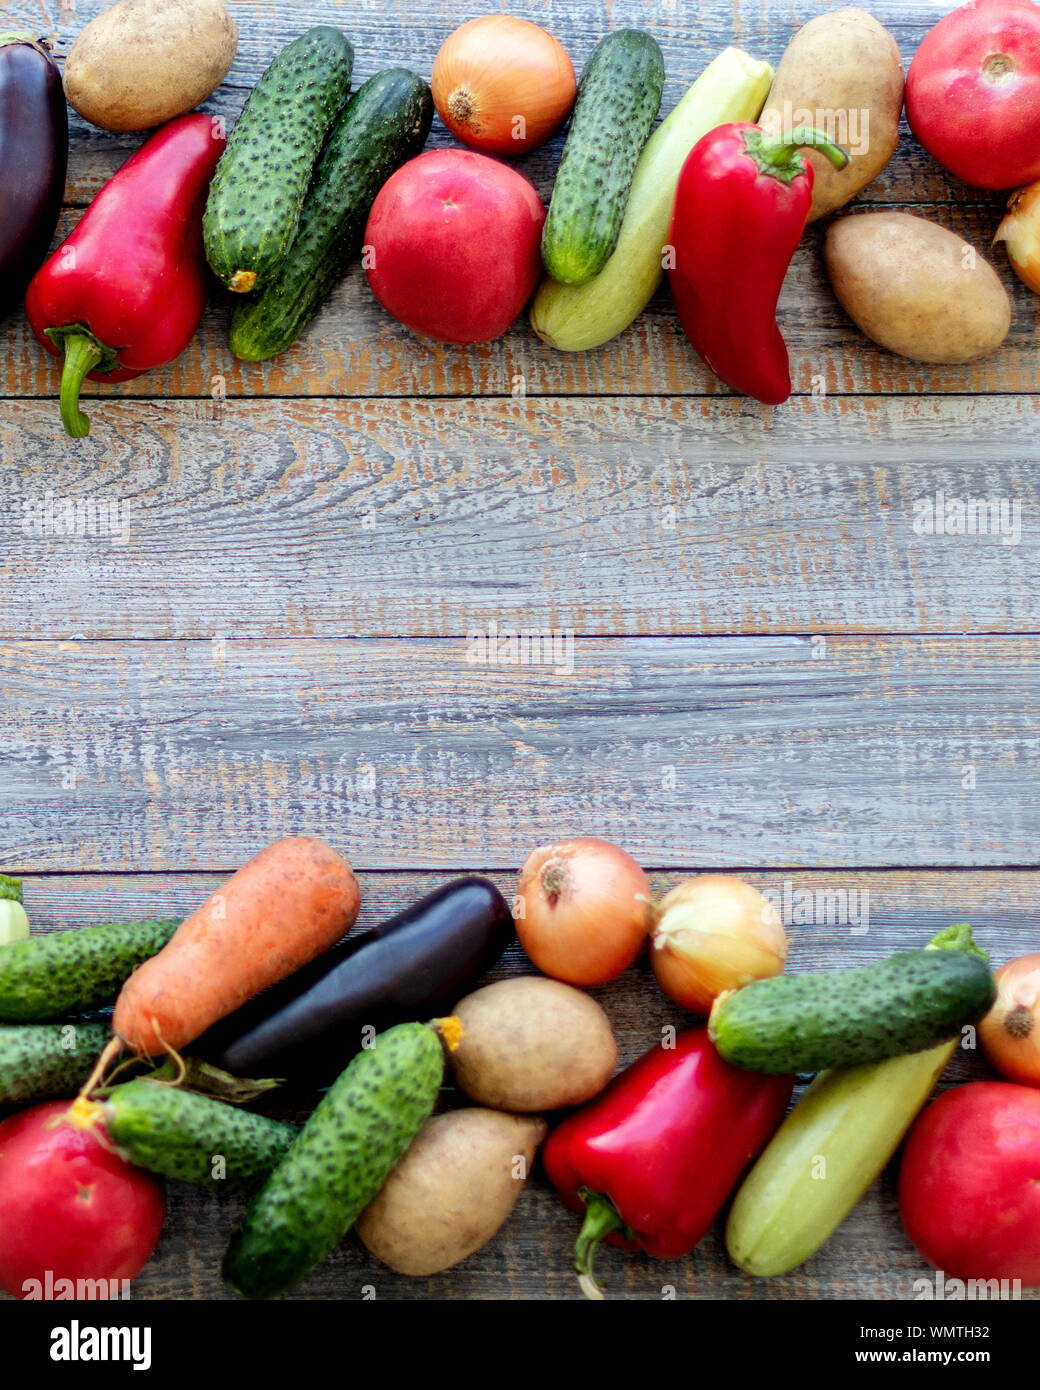 Herbst Ernte. Gemüse, Tomaten und Gurken, Karotten und Blumenkohl, Zucchini und Auberginen, Zwiebeln und Kartoffeln auf einem alten Holz- Hintergrund. Stockfoto